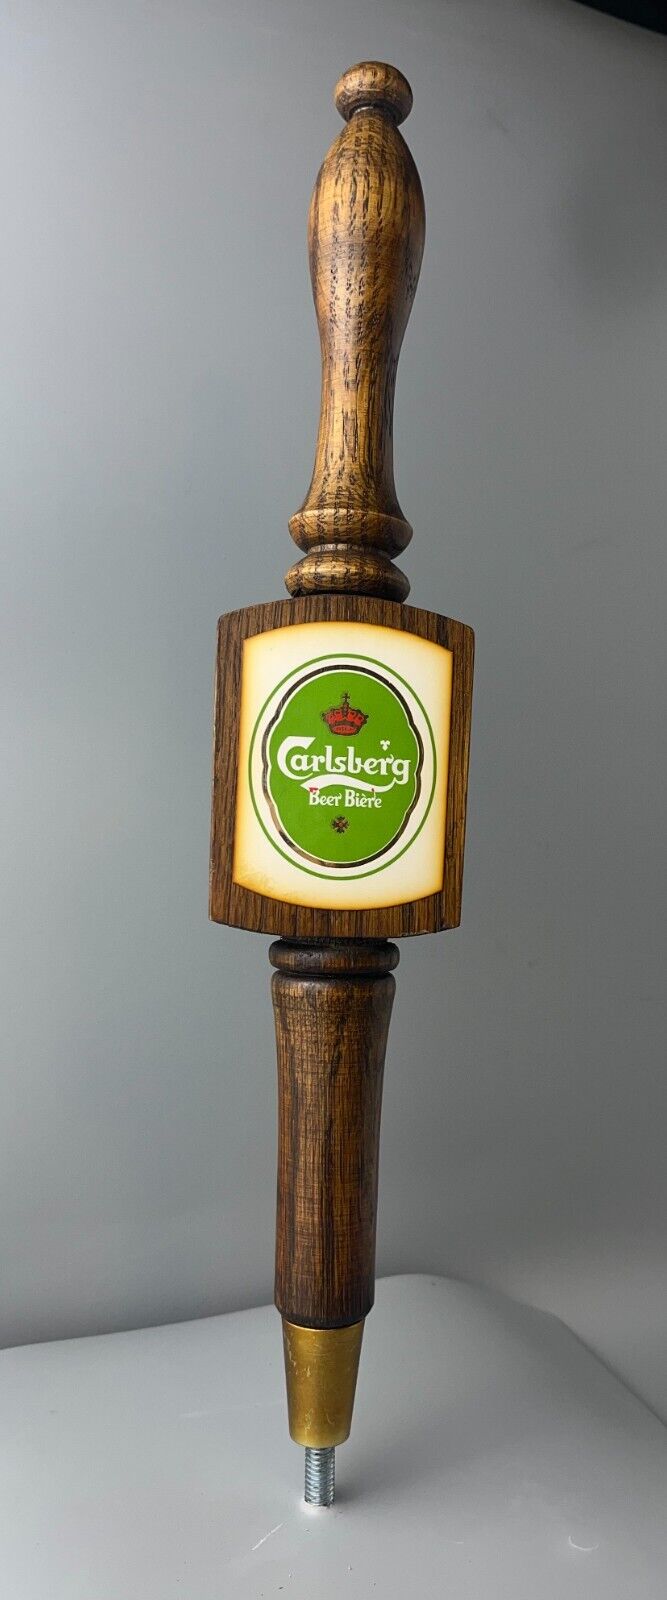 Vintage Wooden Carlsberg Beer Biere Tap Handle with Green Logo, Denmark